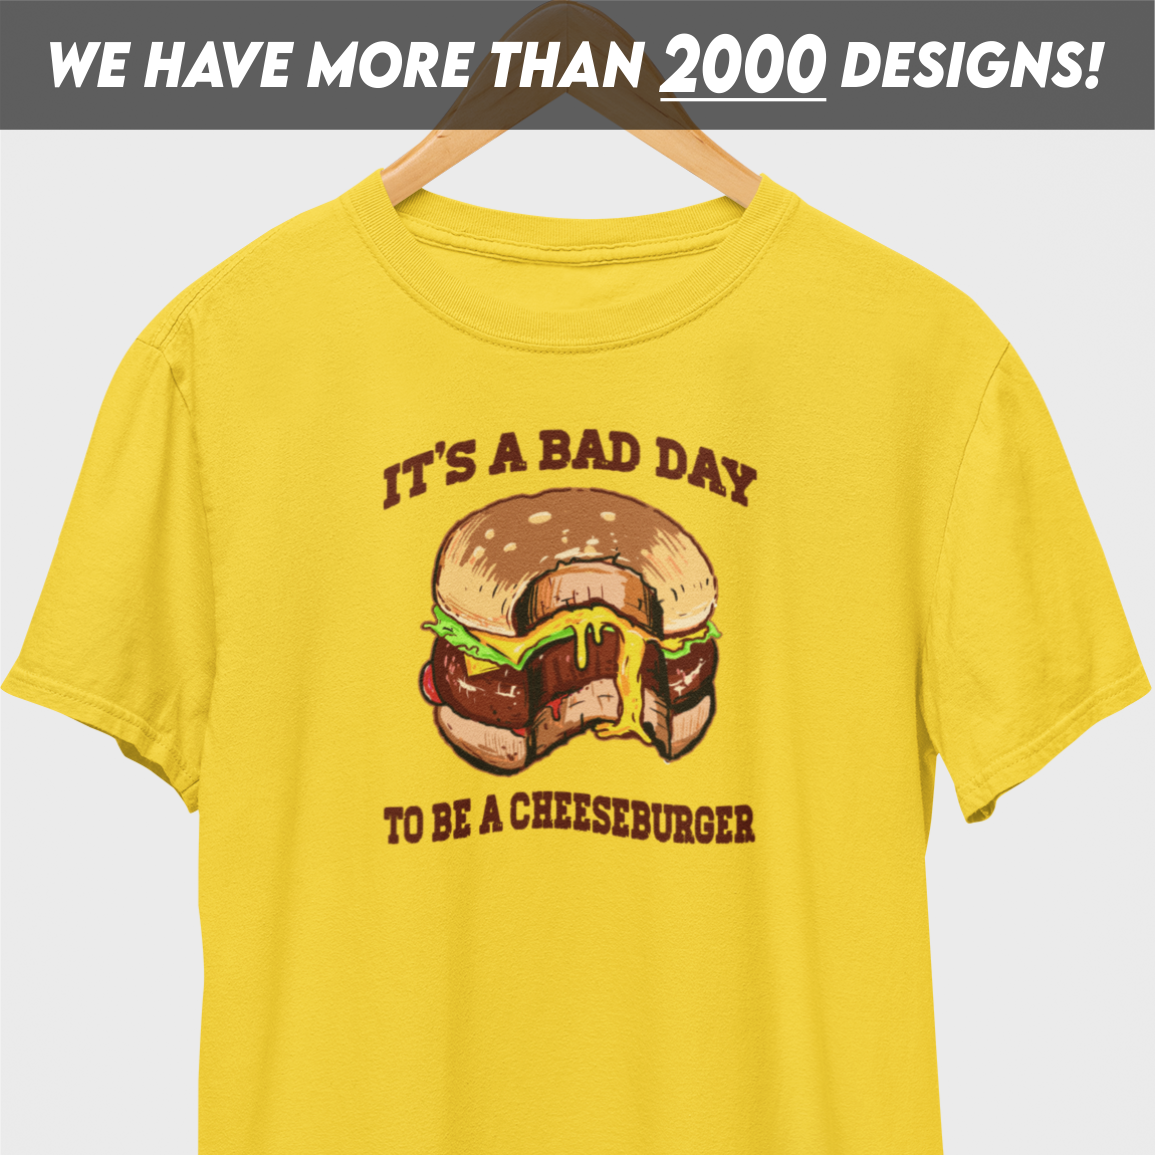 It's A Bad Day Cheeseburger T-Shirt